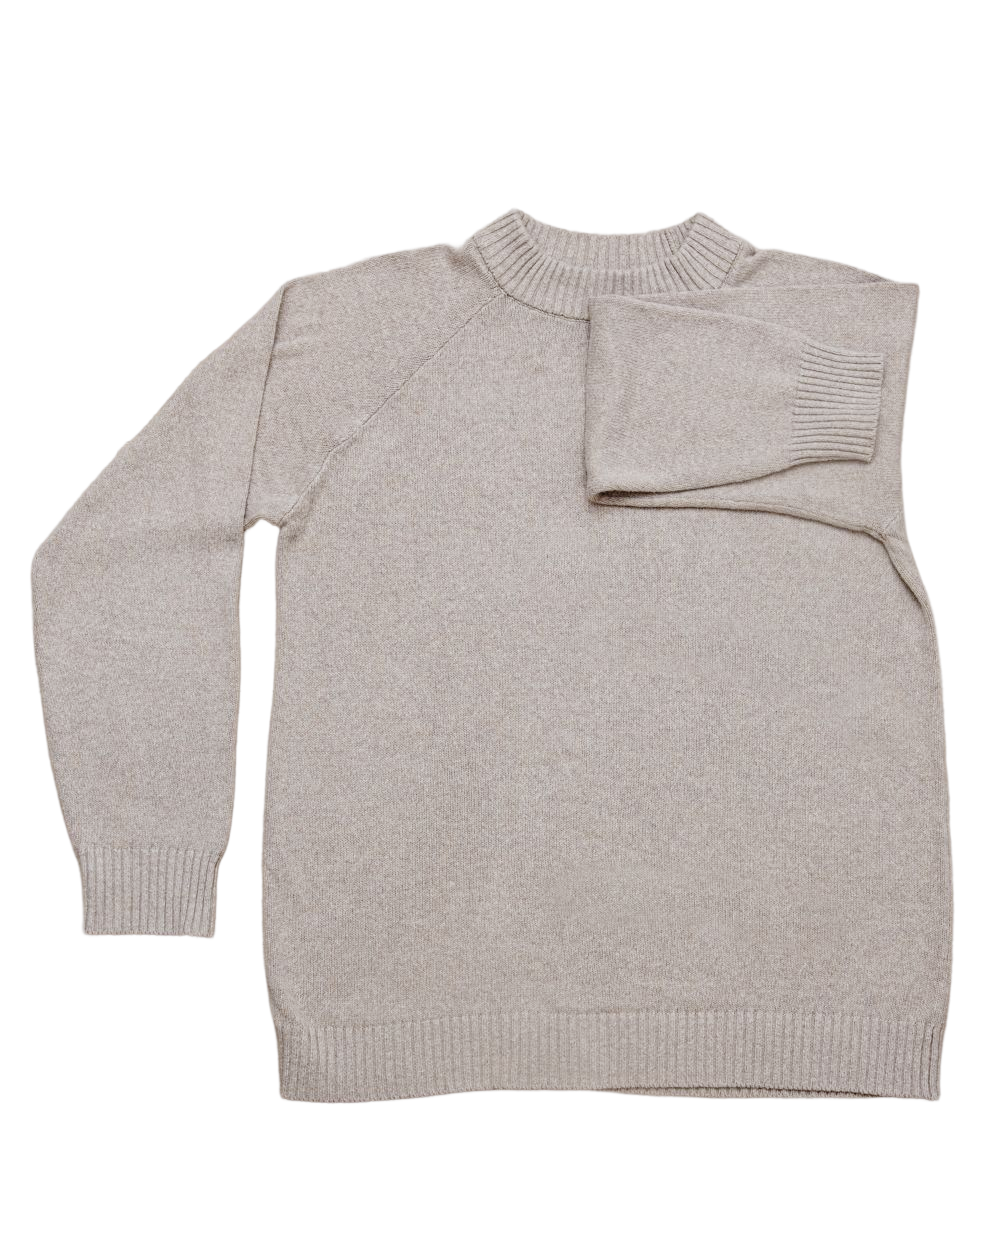 The Crewman Organic Sweater